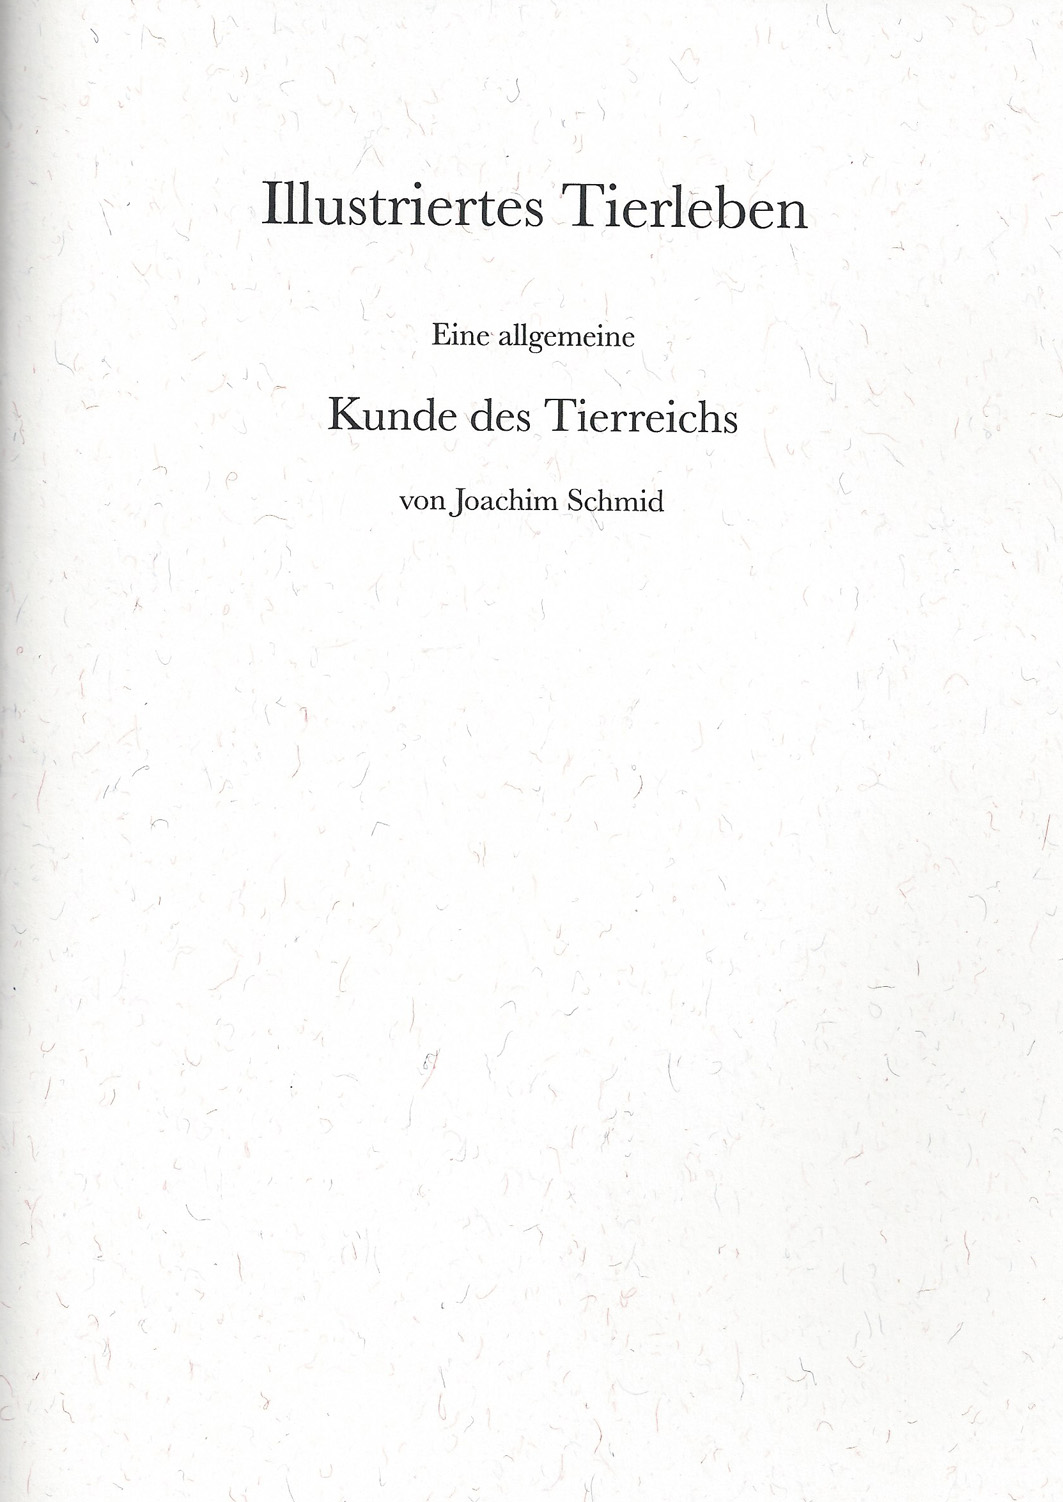 Joachim Schmid - Illustriertes Tierleben. Eine allgemeine Kunde des Tierreichs von Joachim Schmid